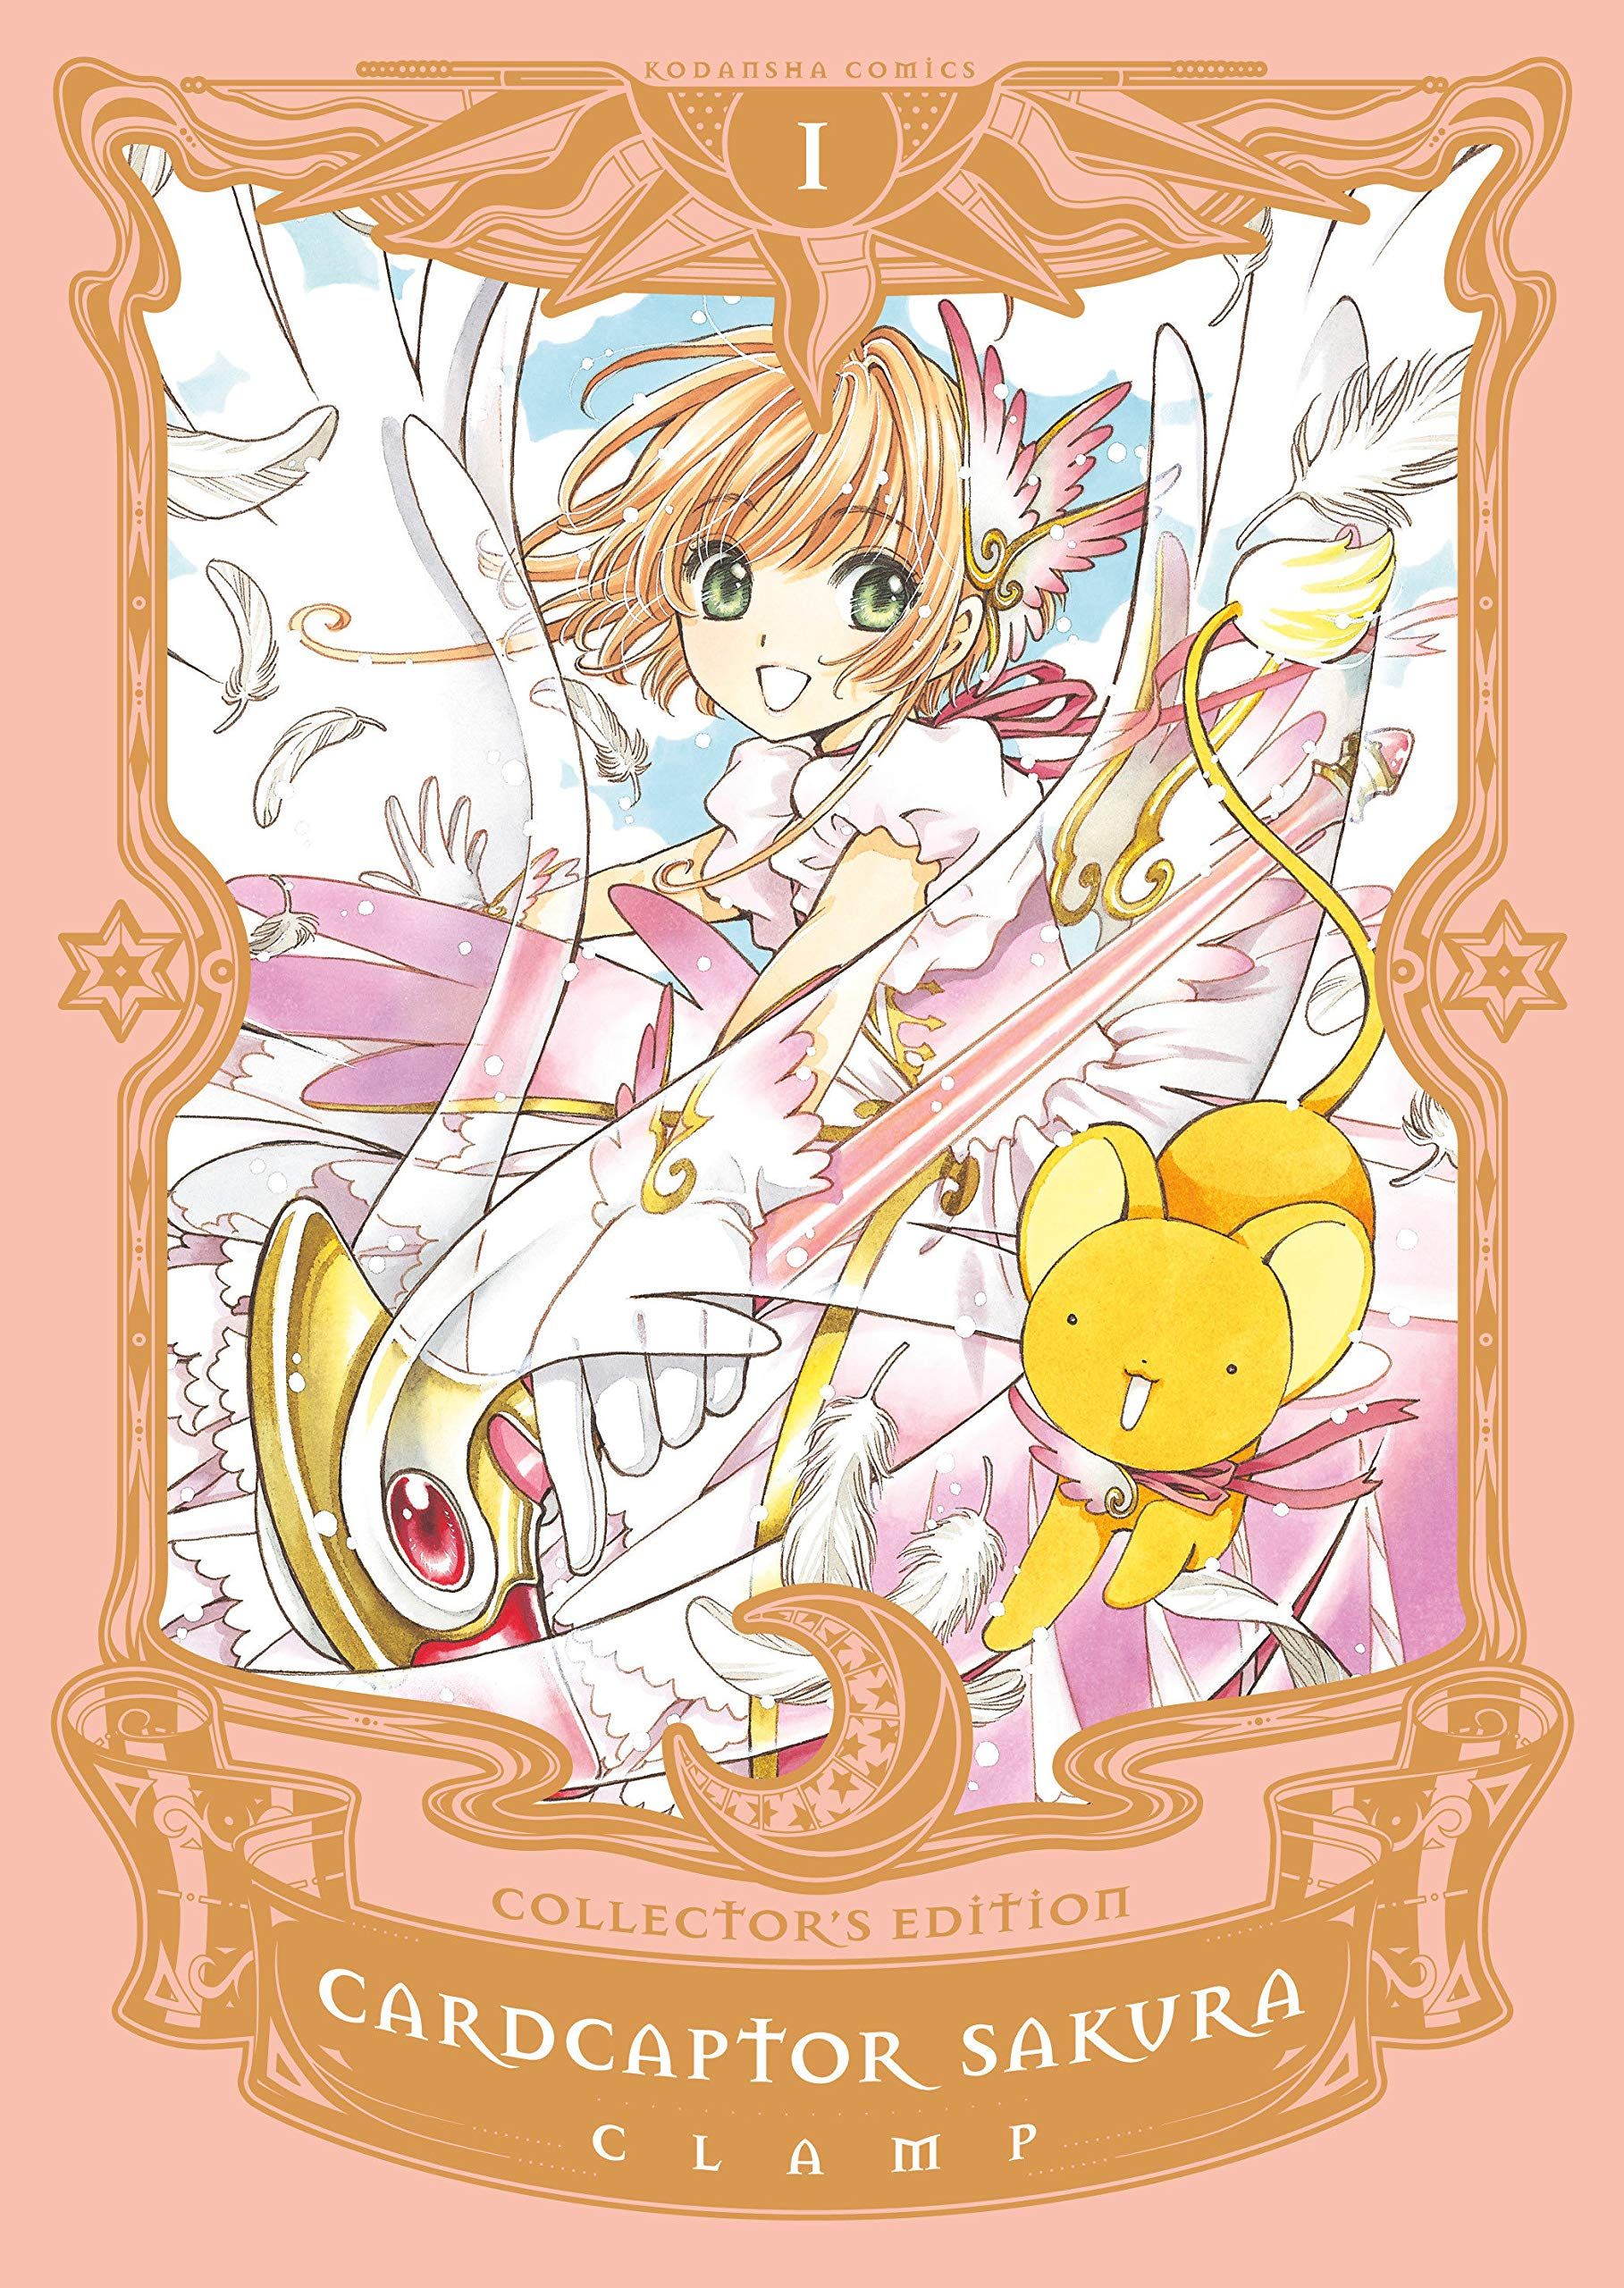 Cardcaptor Sakura by CLAMP cover